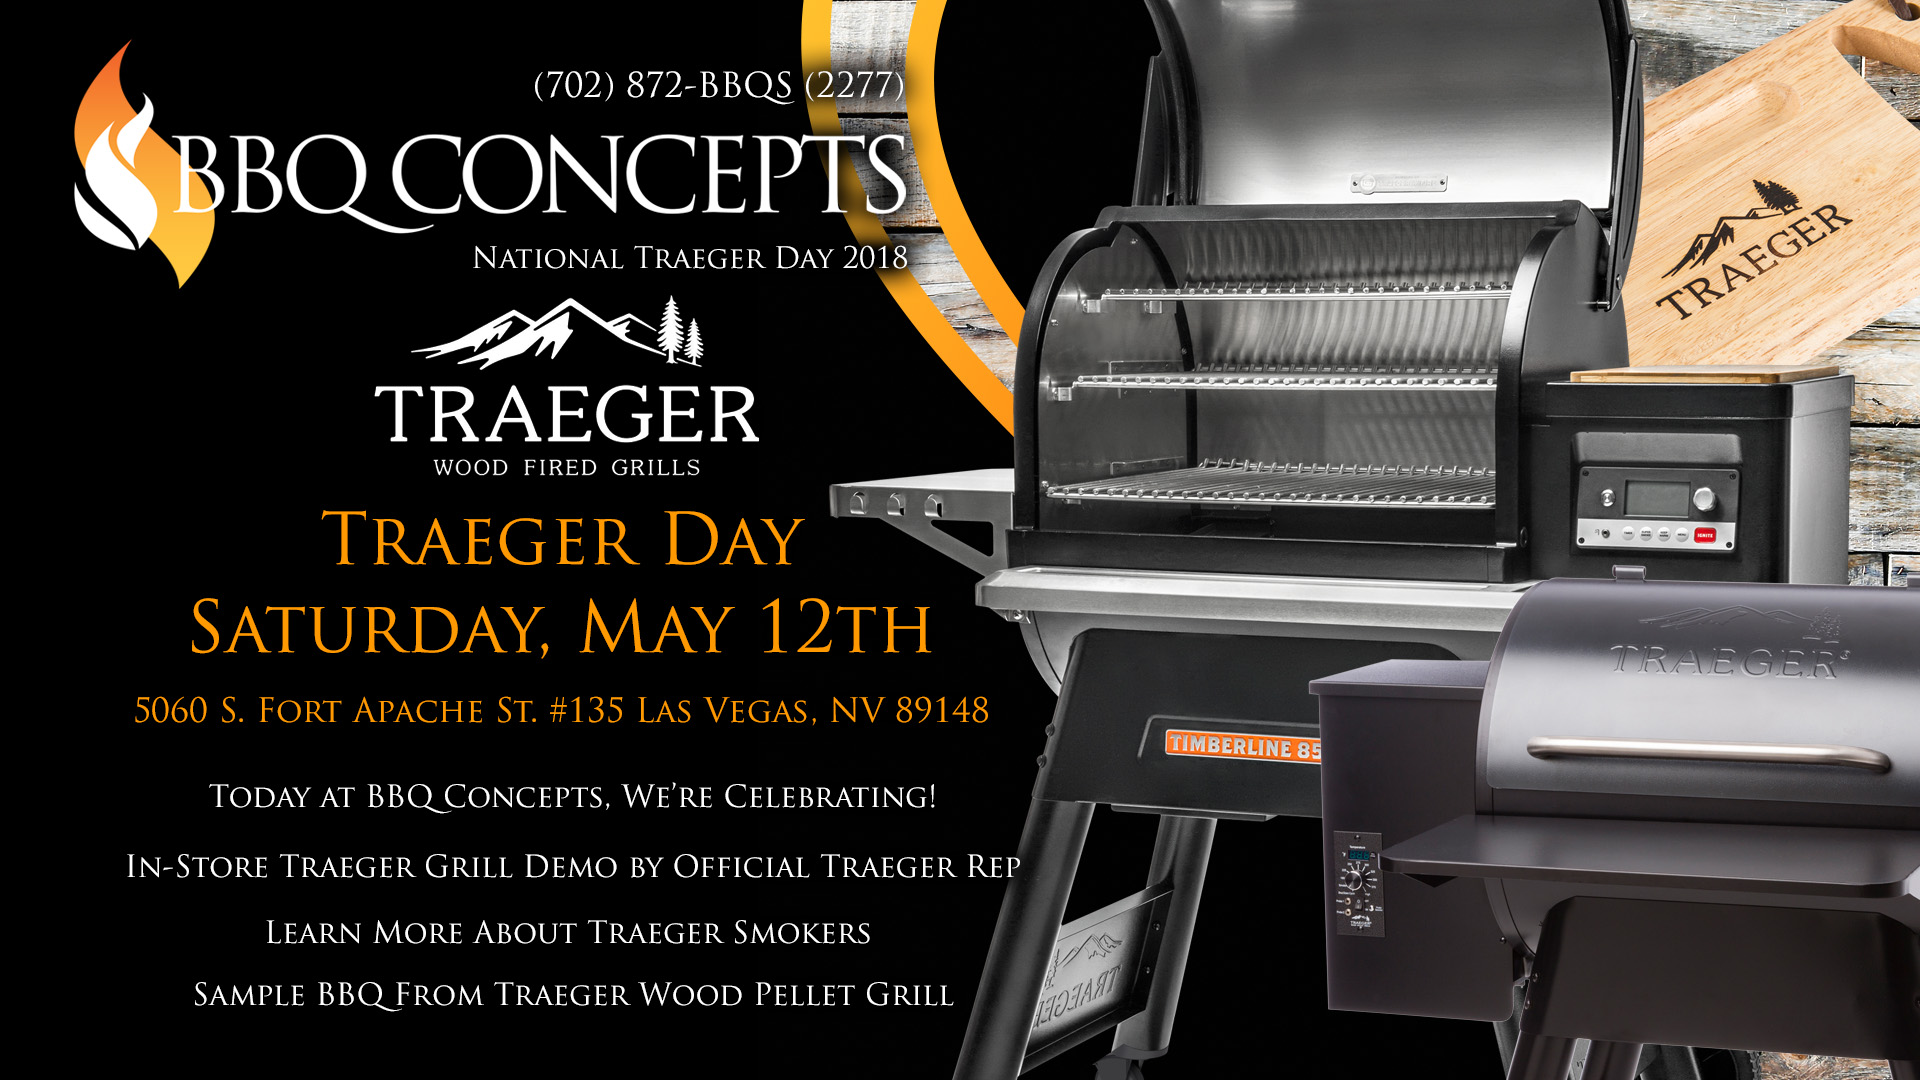 Traeger Day at BBQ Concepts Saturday, May 12th, 2018 